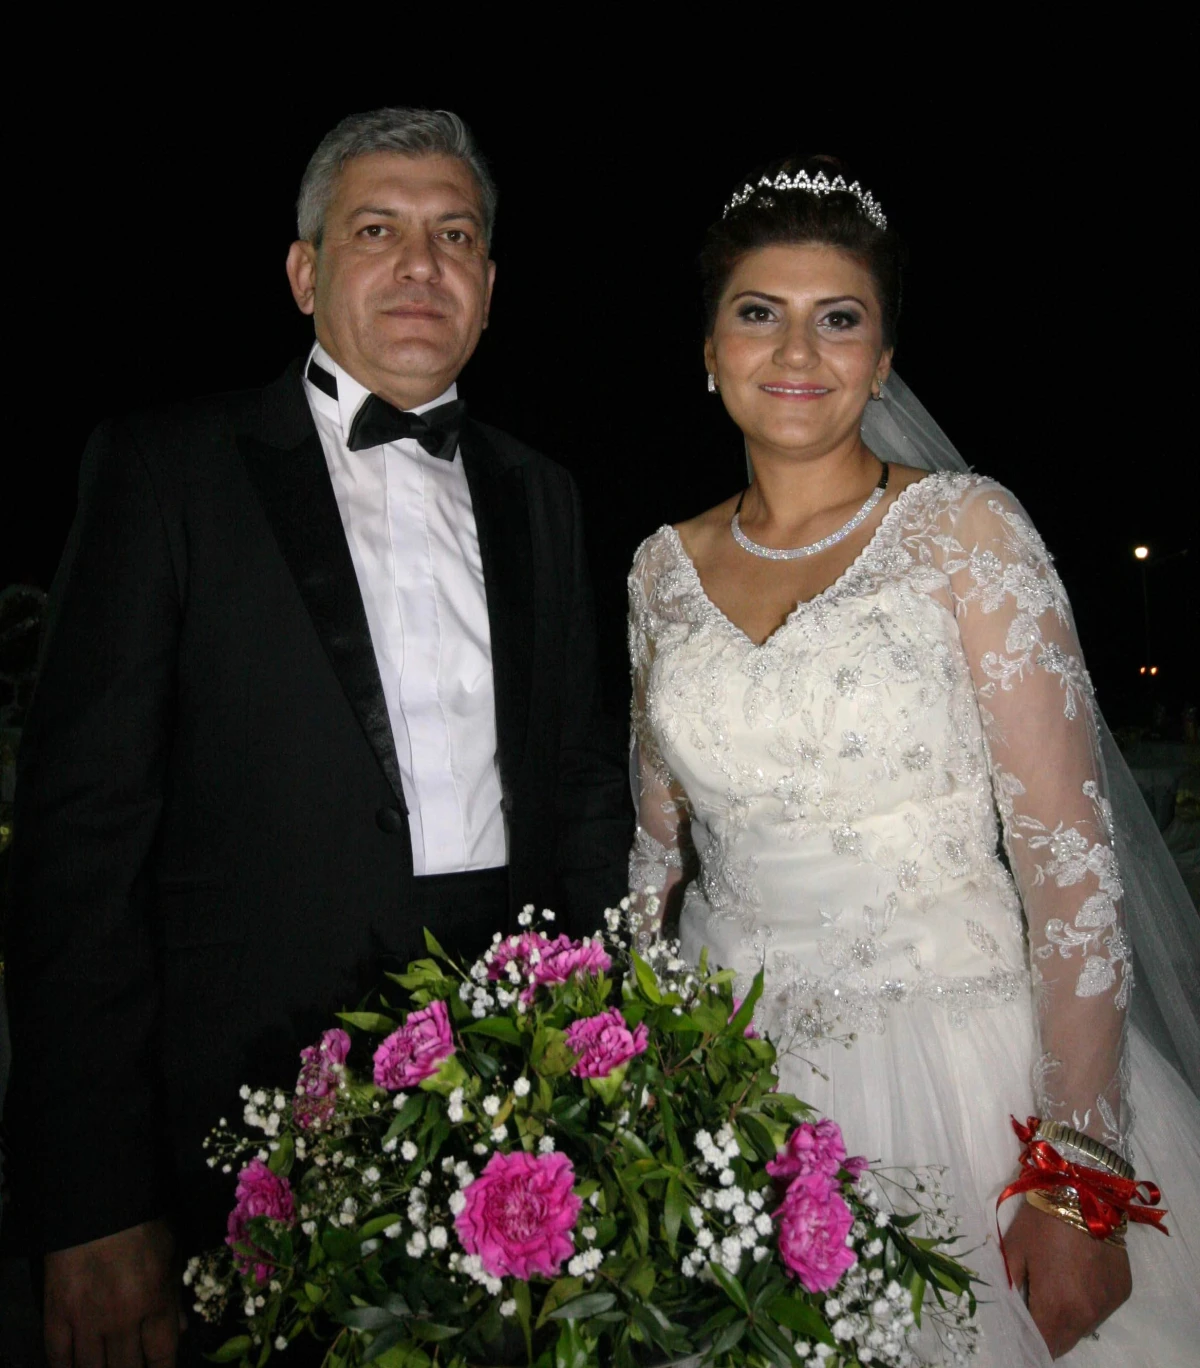 Antalya Aksoy Çiftinin Düğününde Buluştu